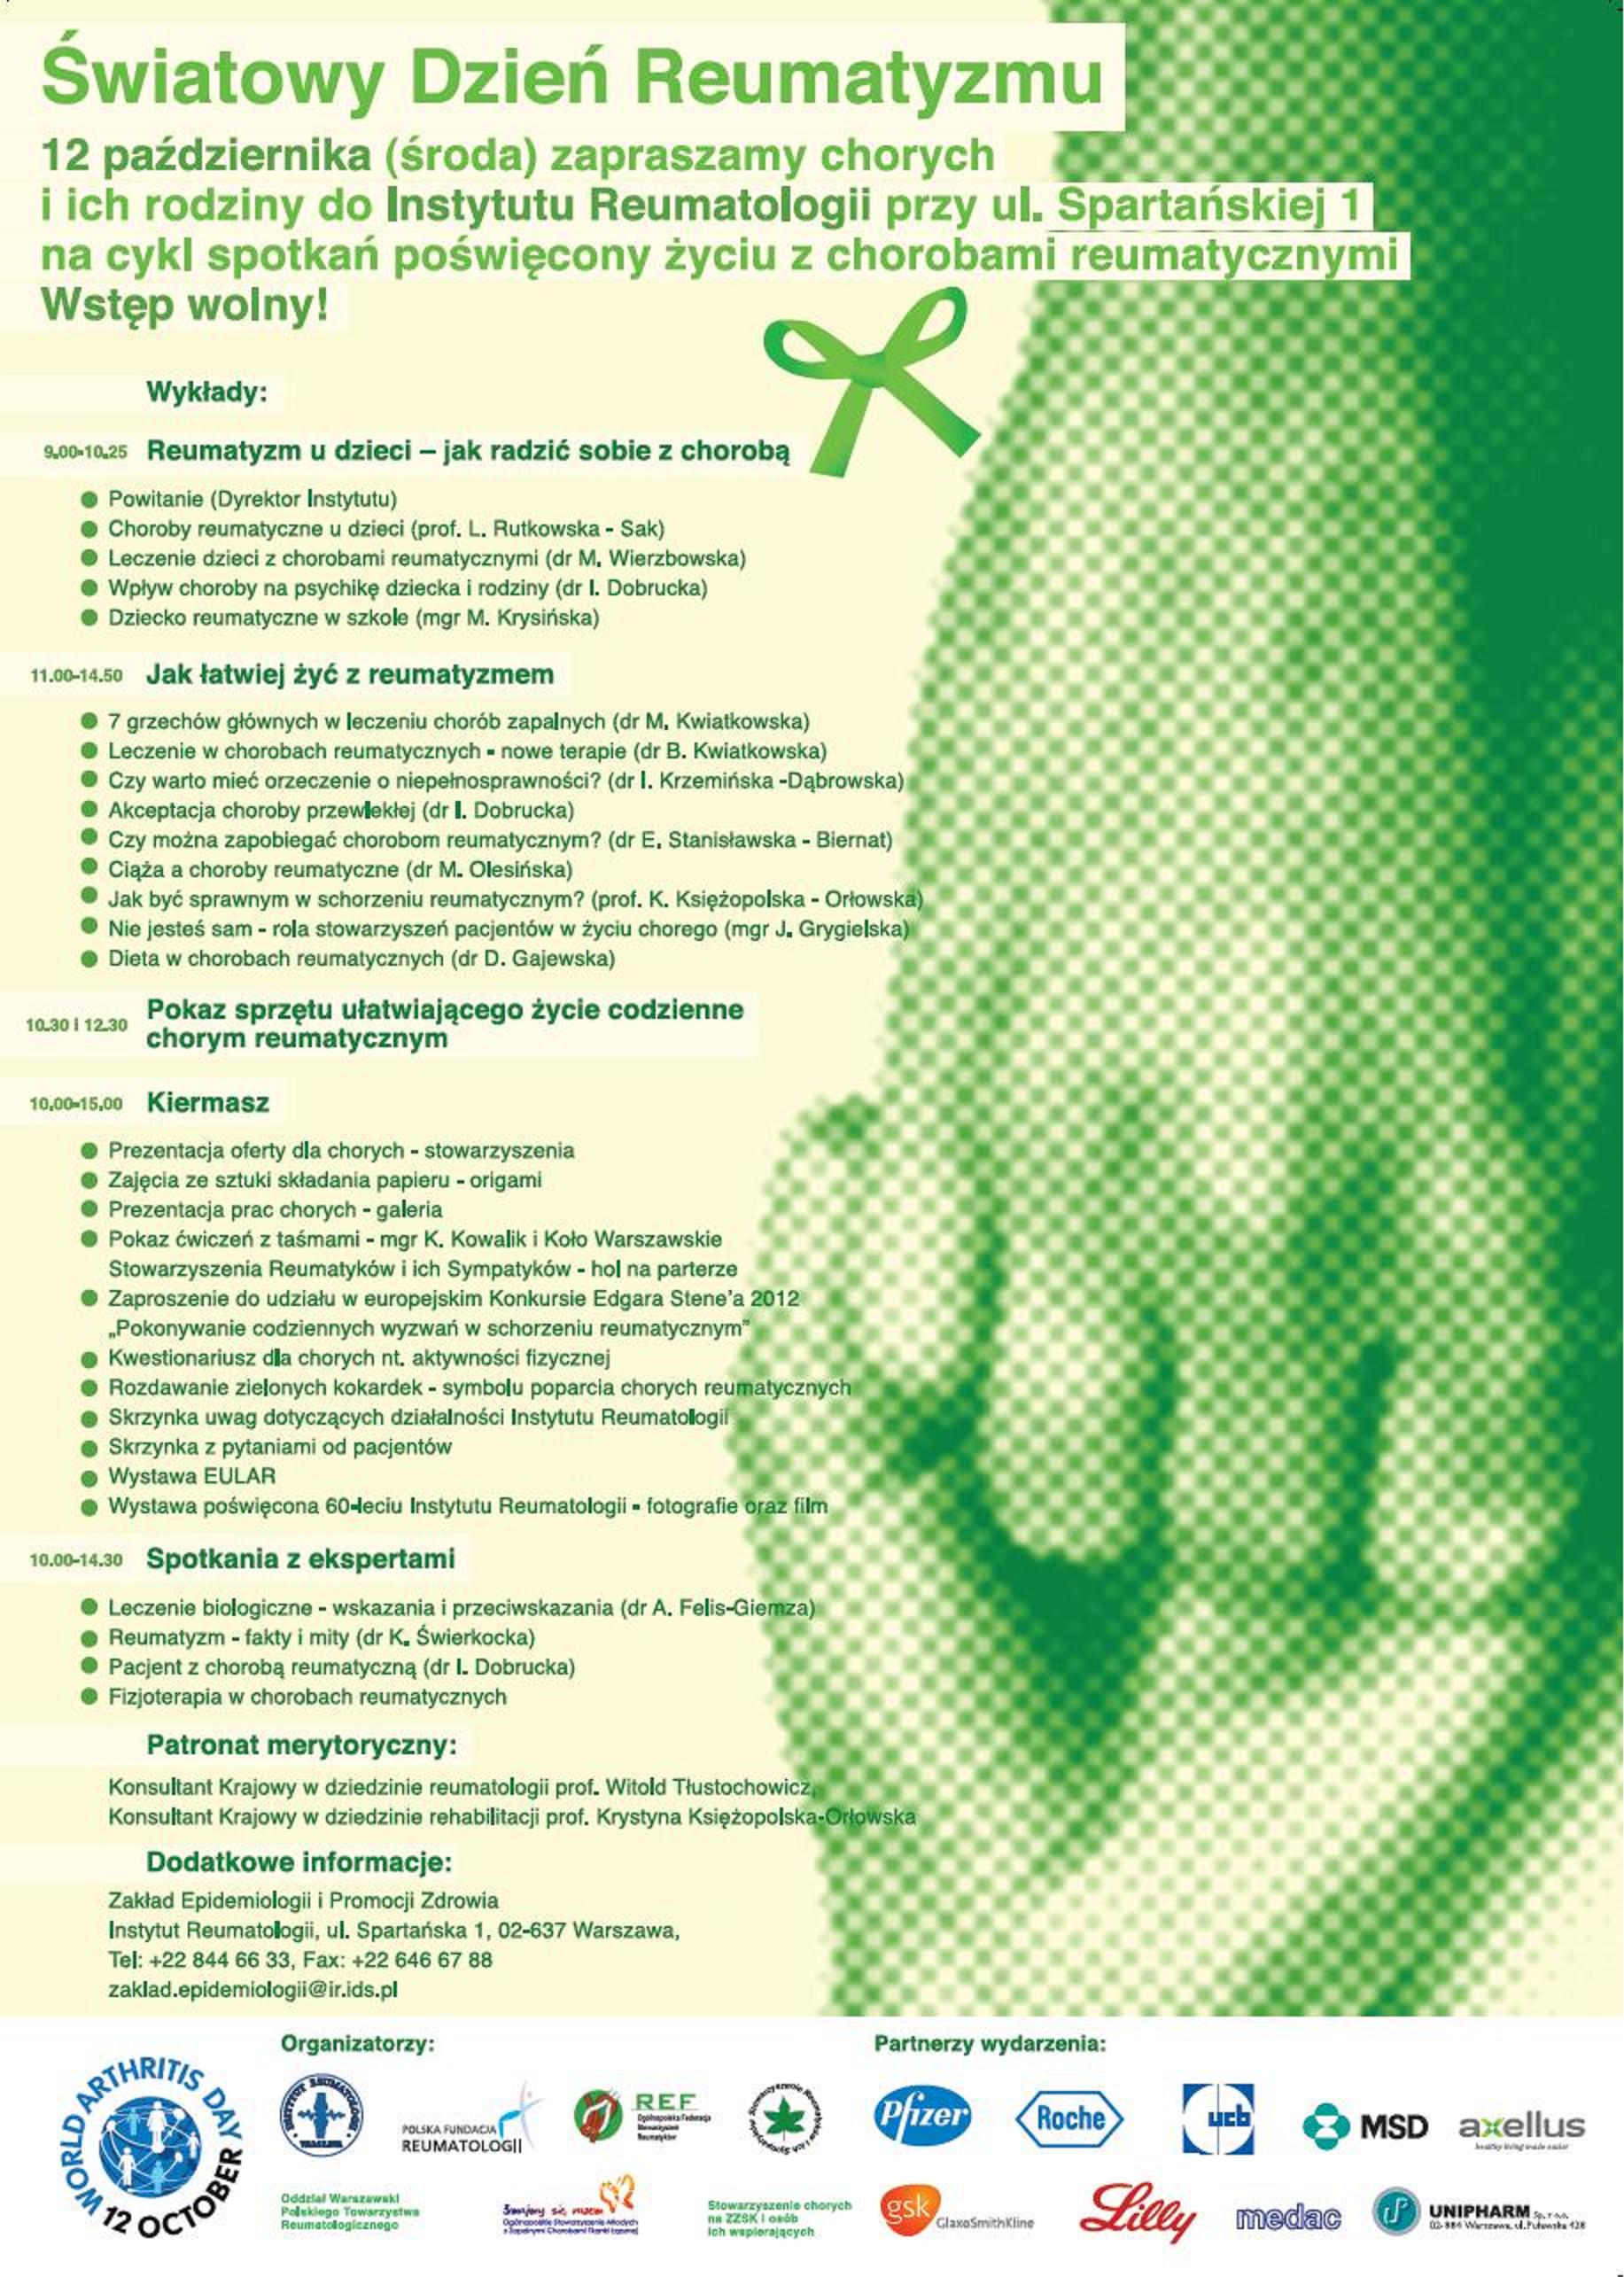 program Światowego Dnia Reumatyzmu